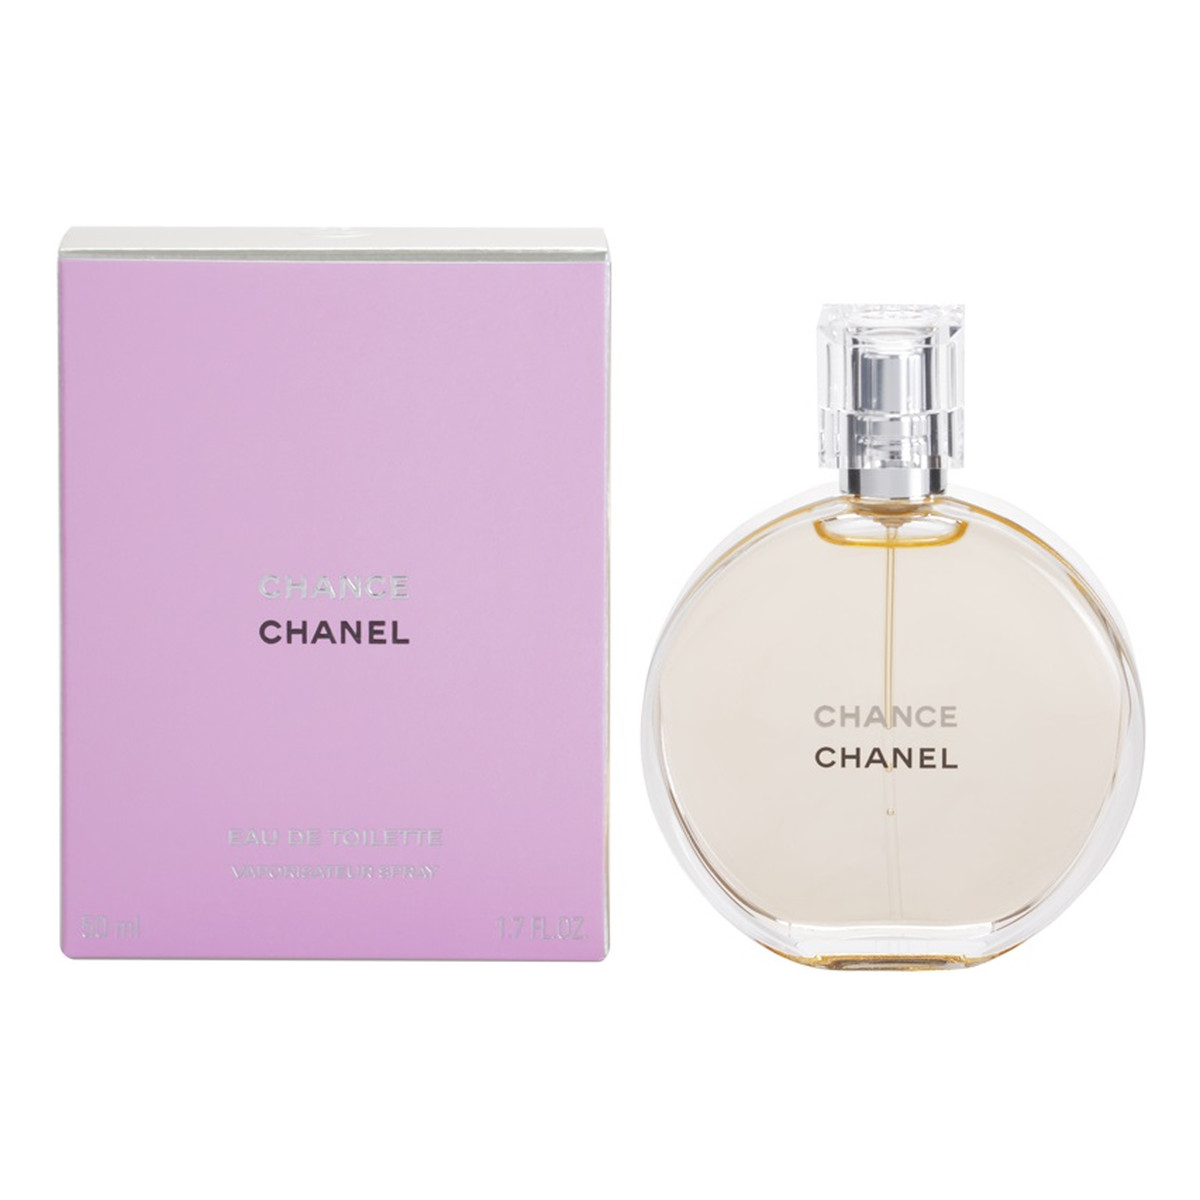 Chanel Chance woda toaletowa spray dla kobiet 50ml